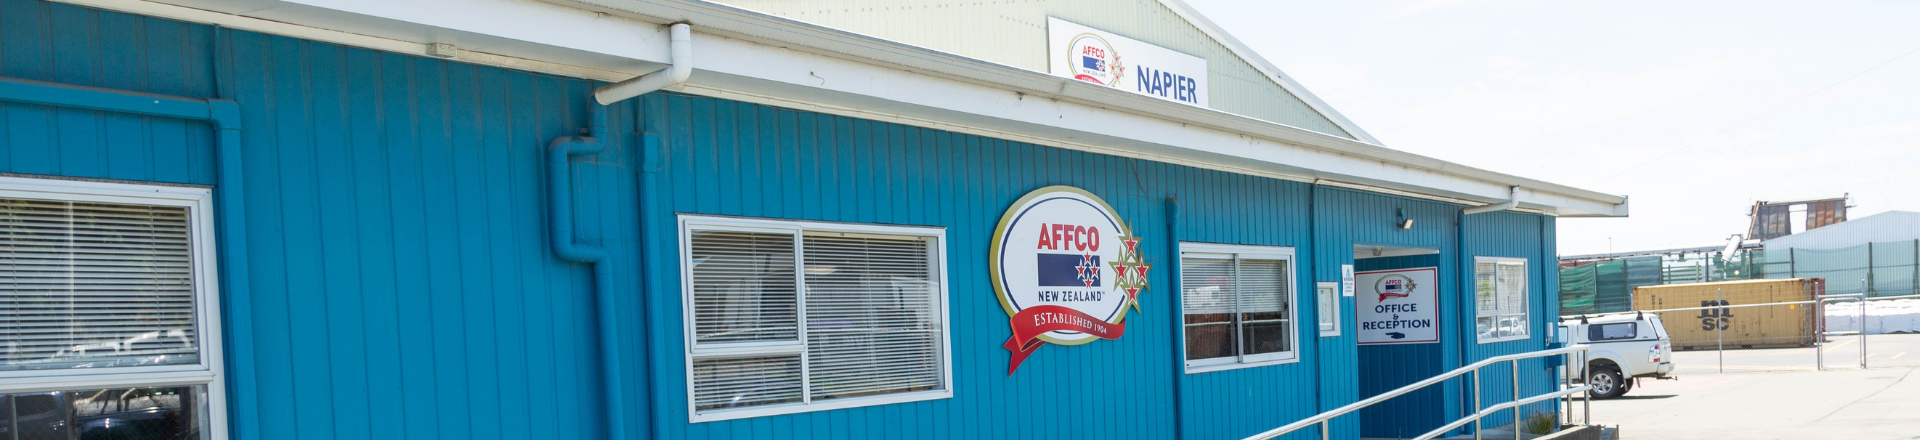 AFFCO Napier